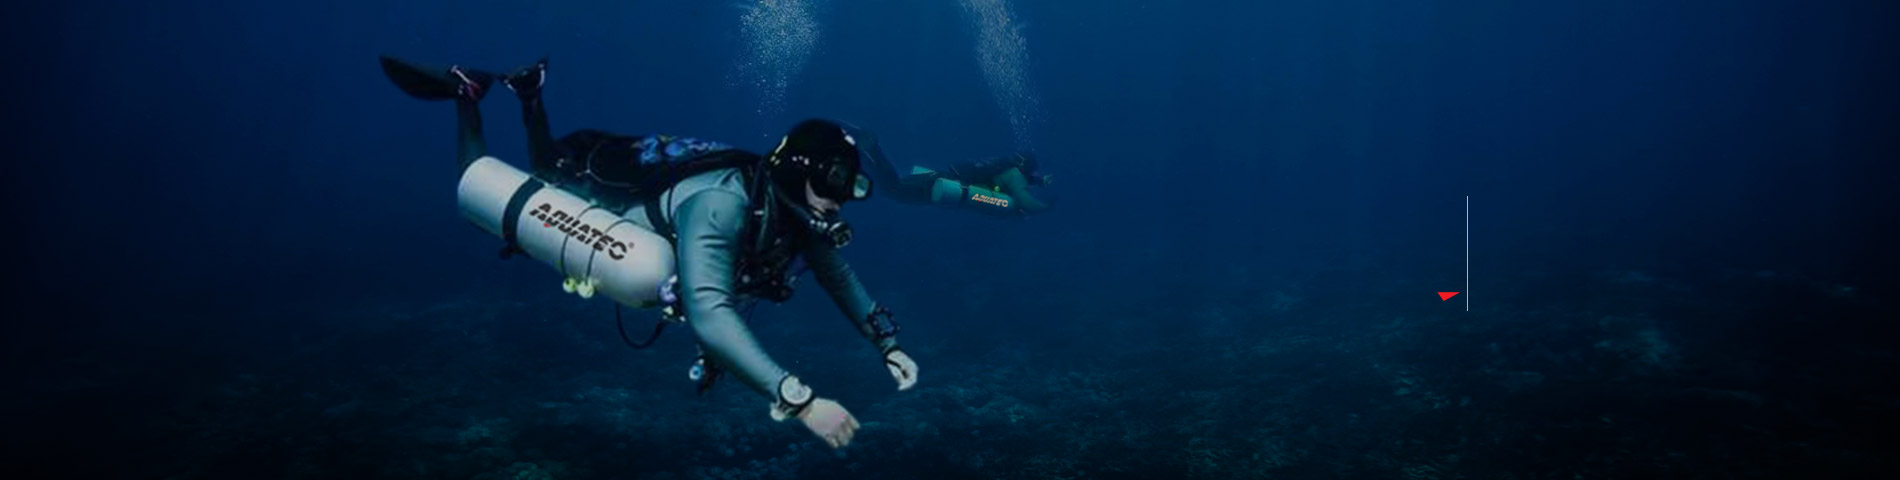 Oppdag AQUATEC Profesjonelt dykkerutstyr